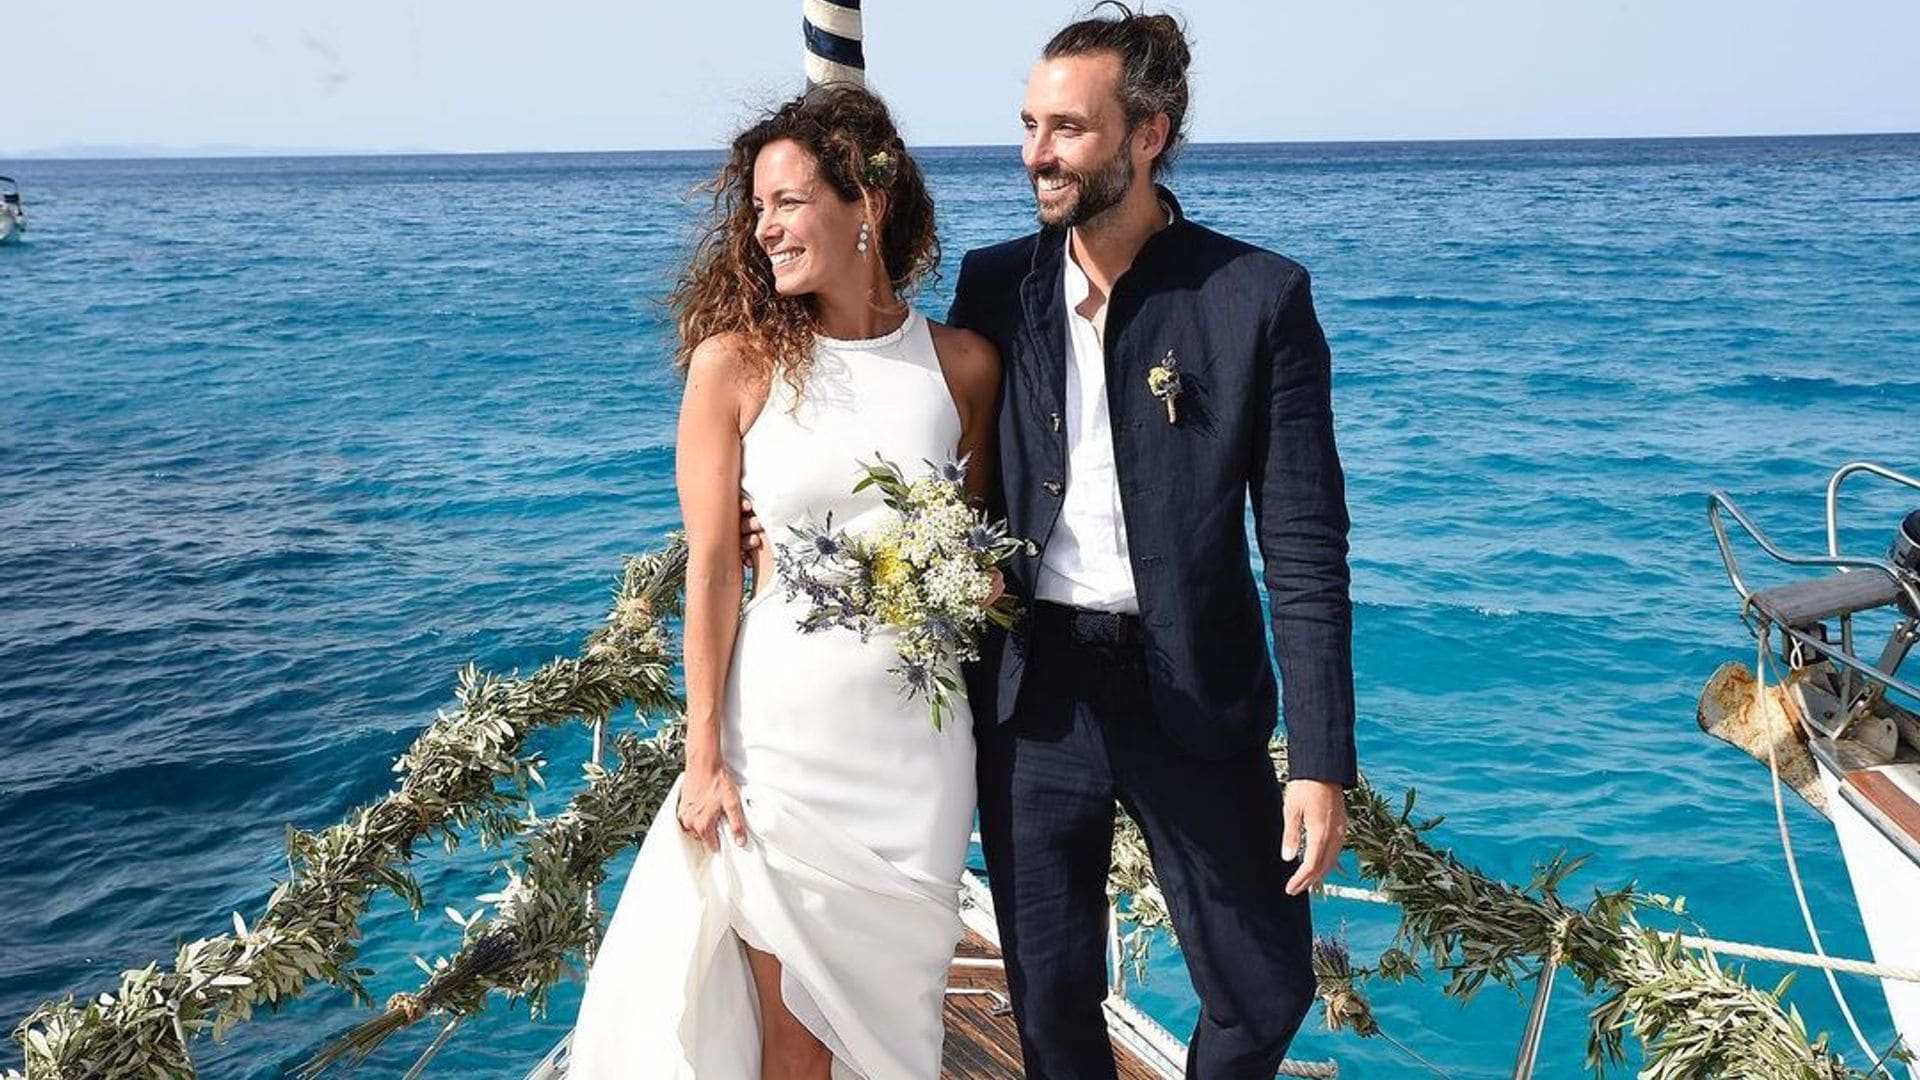 Recordamos la romántica y divertida boda en el mar de Laura Madrueño y Álvaro Puerto al cumplirse el segundo aniversario